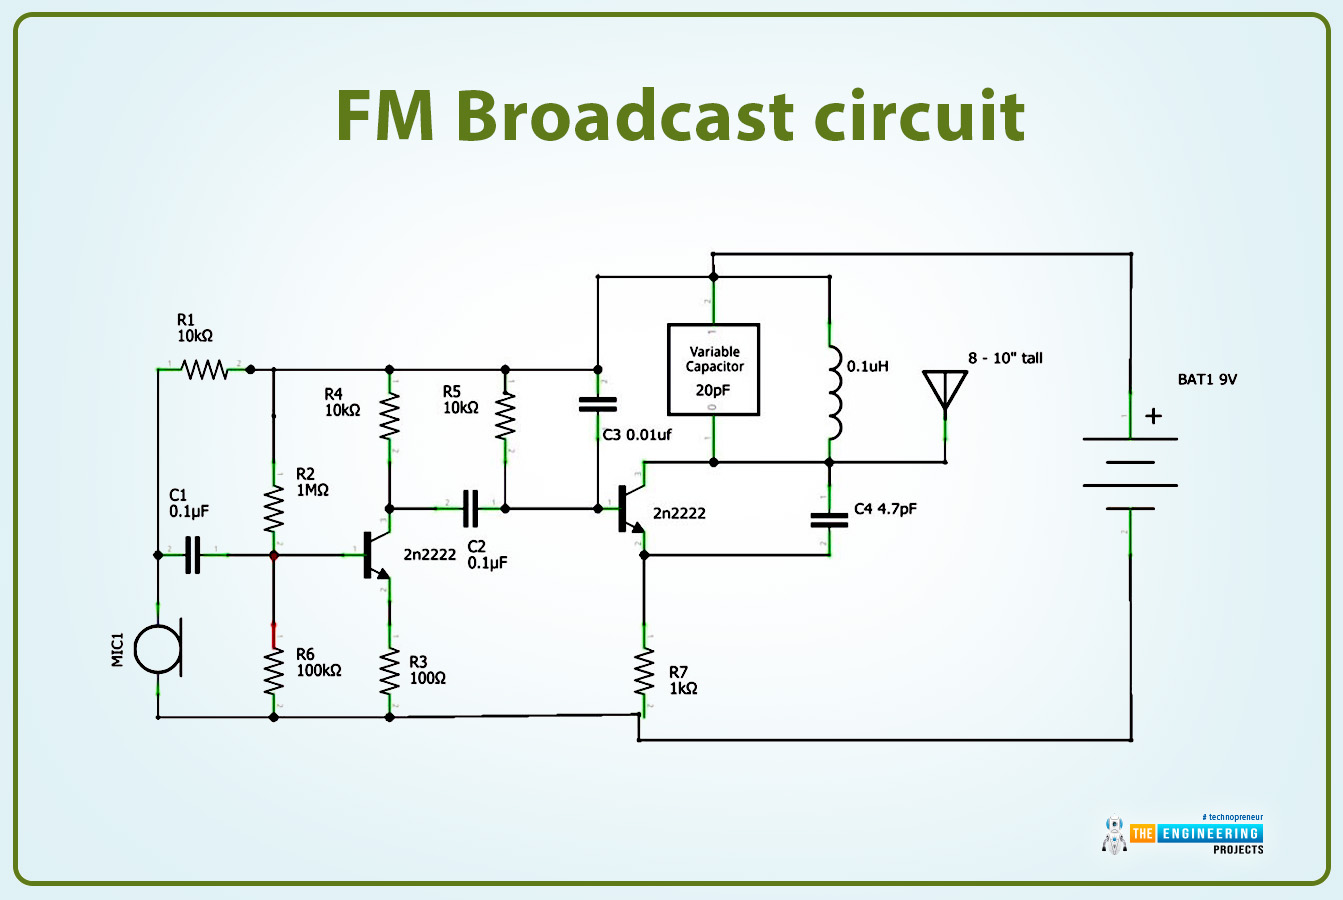 How to Build a Raspberry Pi FM Transmitter, FM transmitter with Raspberry pi 4, fm transmitter circuit in RPi4, RPi4 FM transmitter, FM transmitter with RPi4